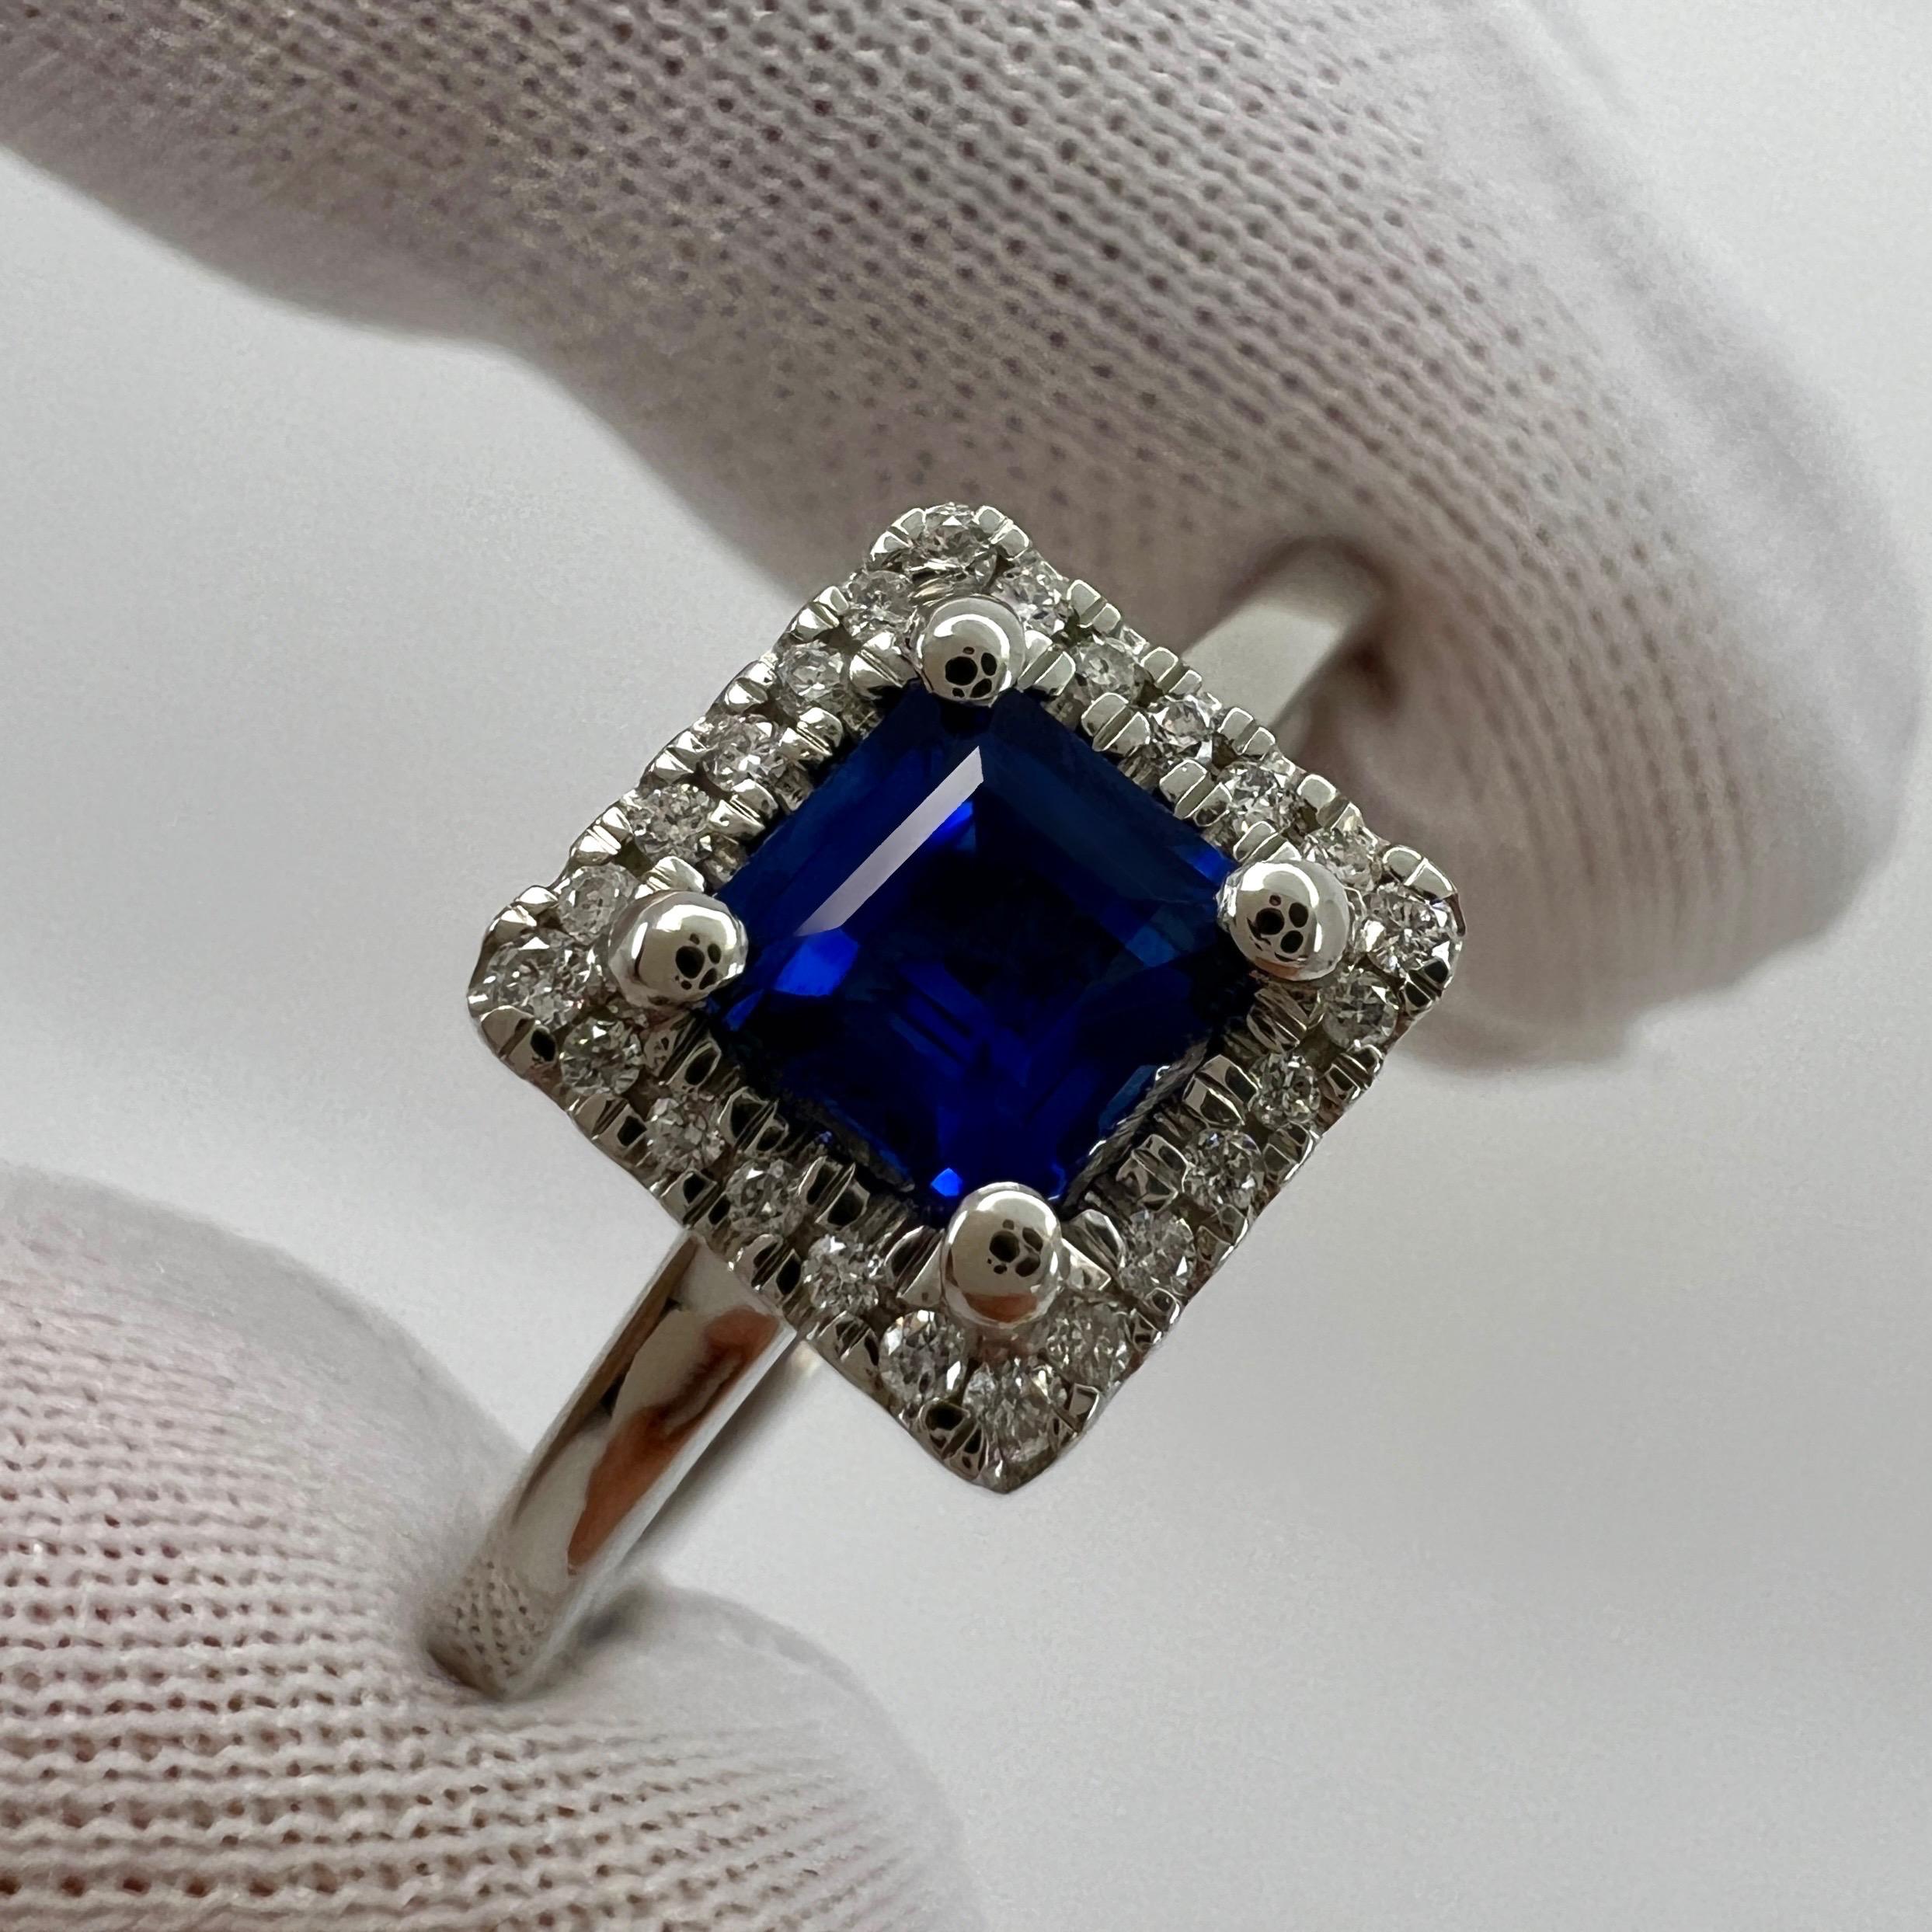 Fine Vivid Ceylon Cornflower Blue Sapphire & Diamond Platinum Square Princess Cut Halo Ring 0.80tcw.

Superbe saphir naturel de Ceylan de 0,66ct d'une belle couleur bleu bleuet vif et d'une excellente clarté, pierre très propre.
Il présente